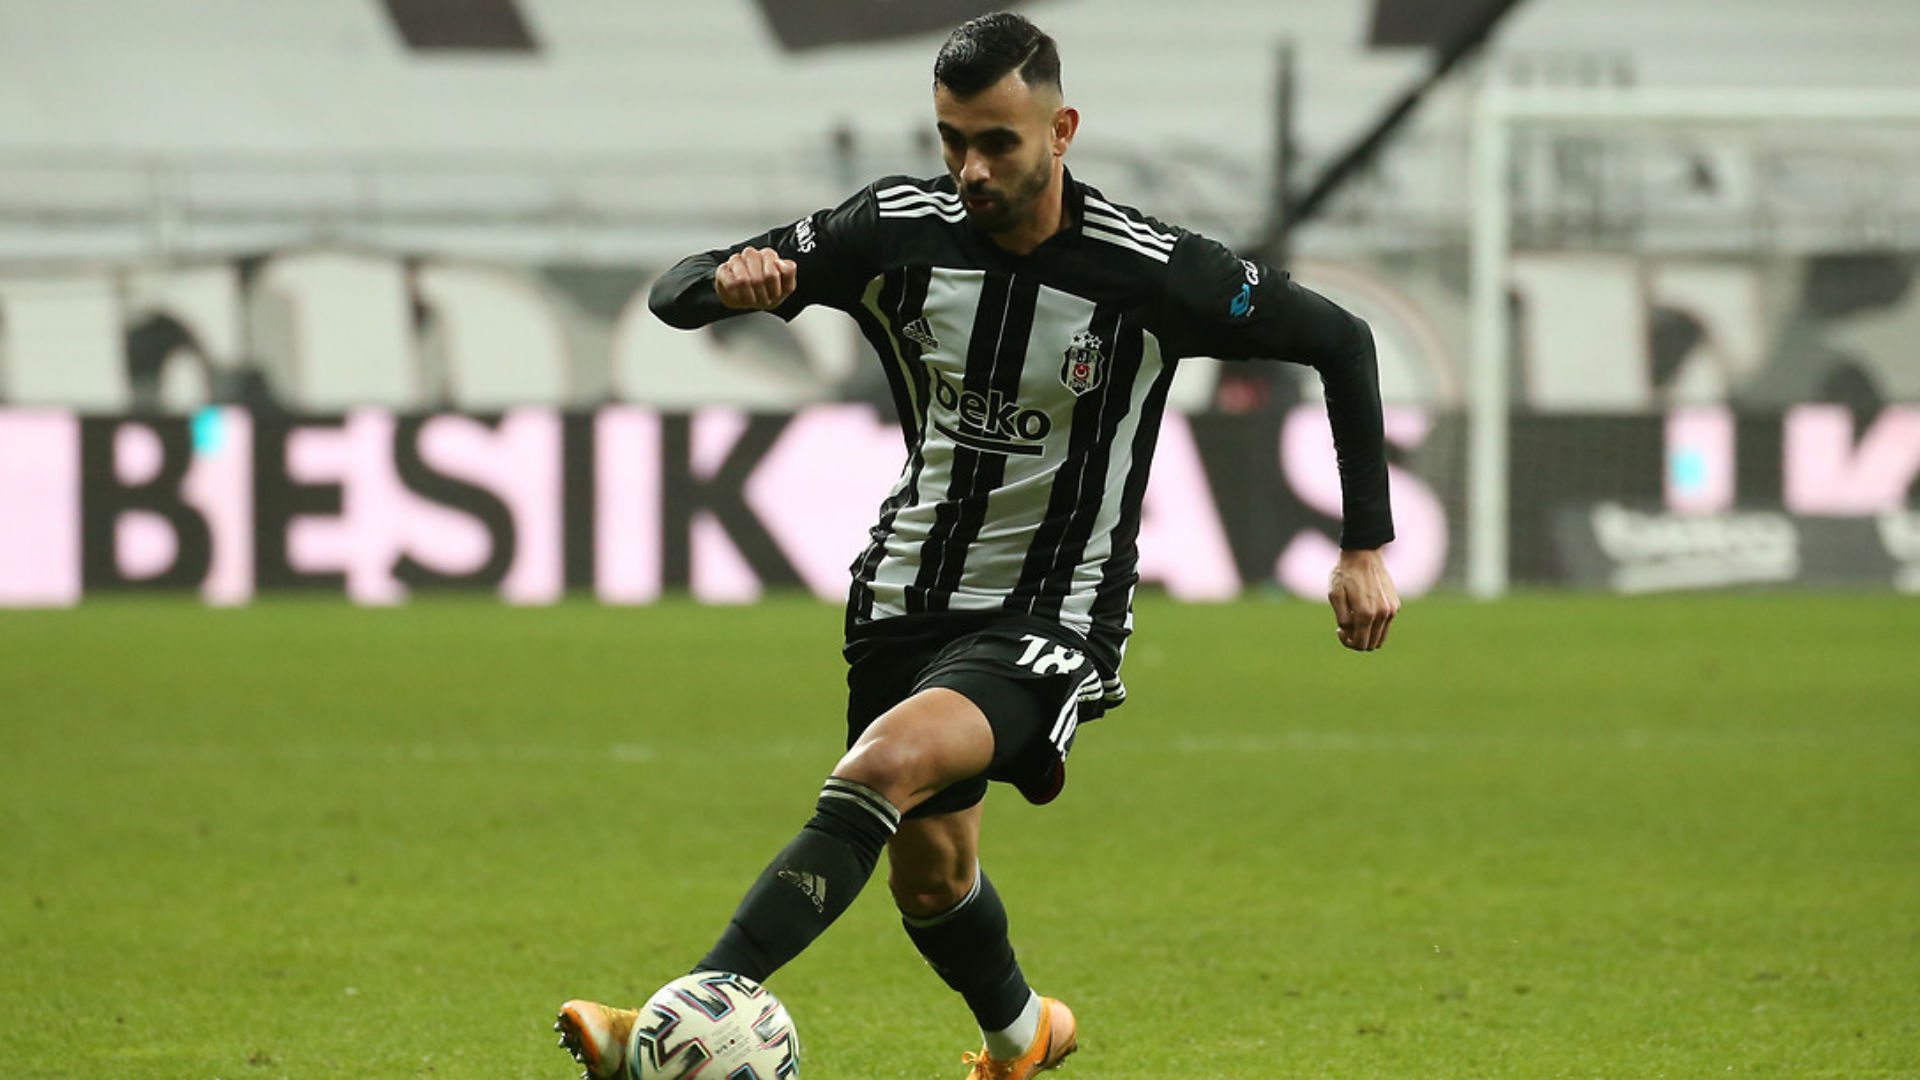 Ghezzal Beşiktaş ta kalmak için şartını açıkladı